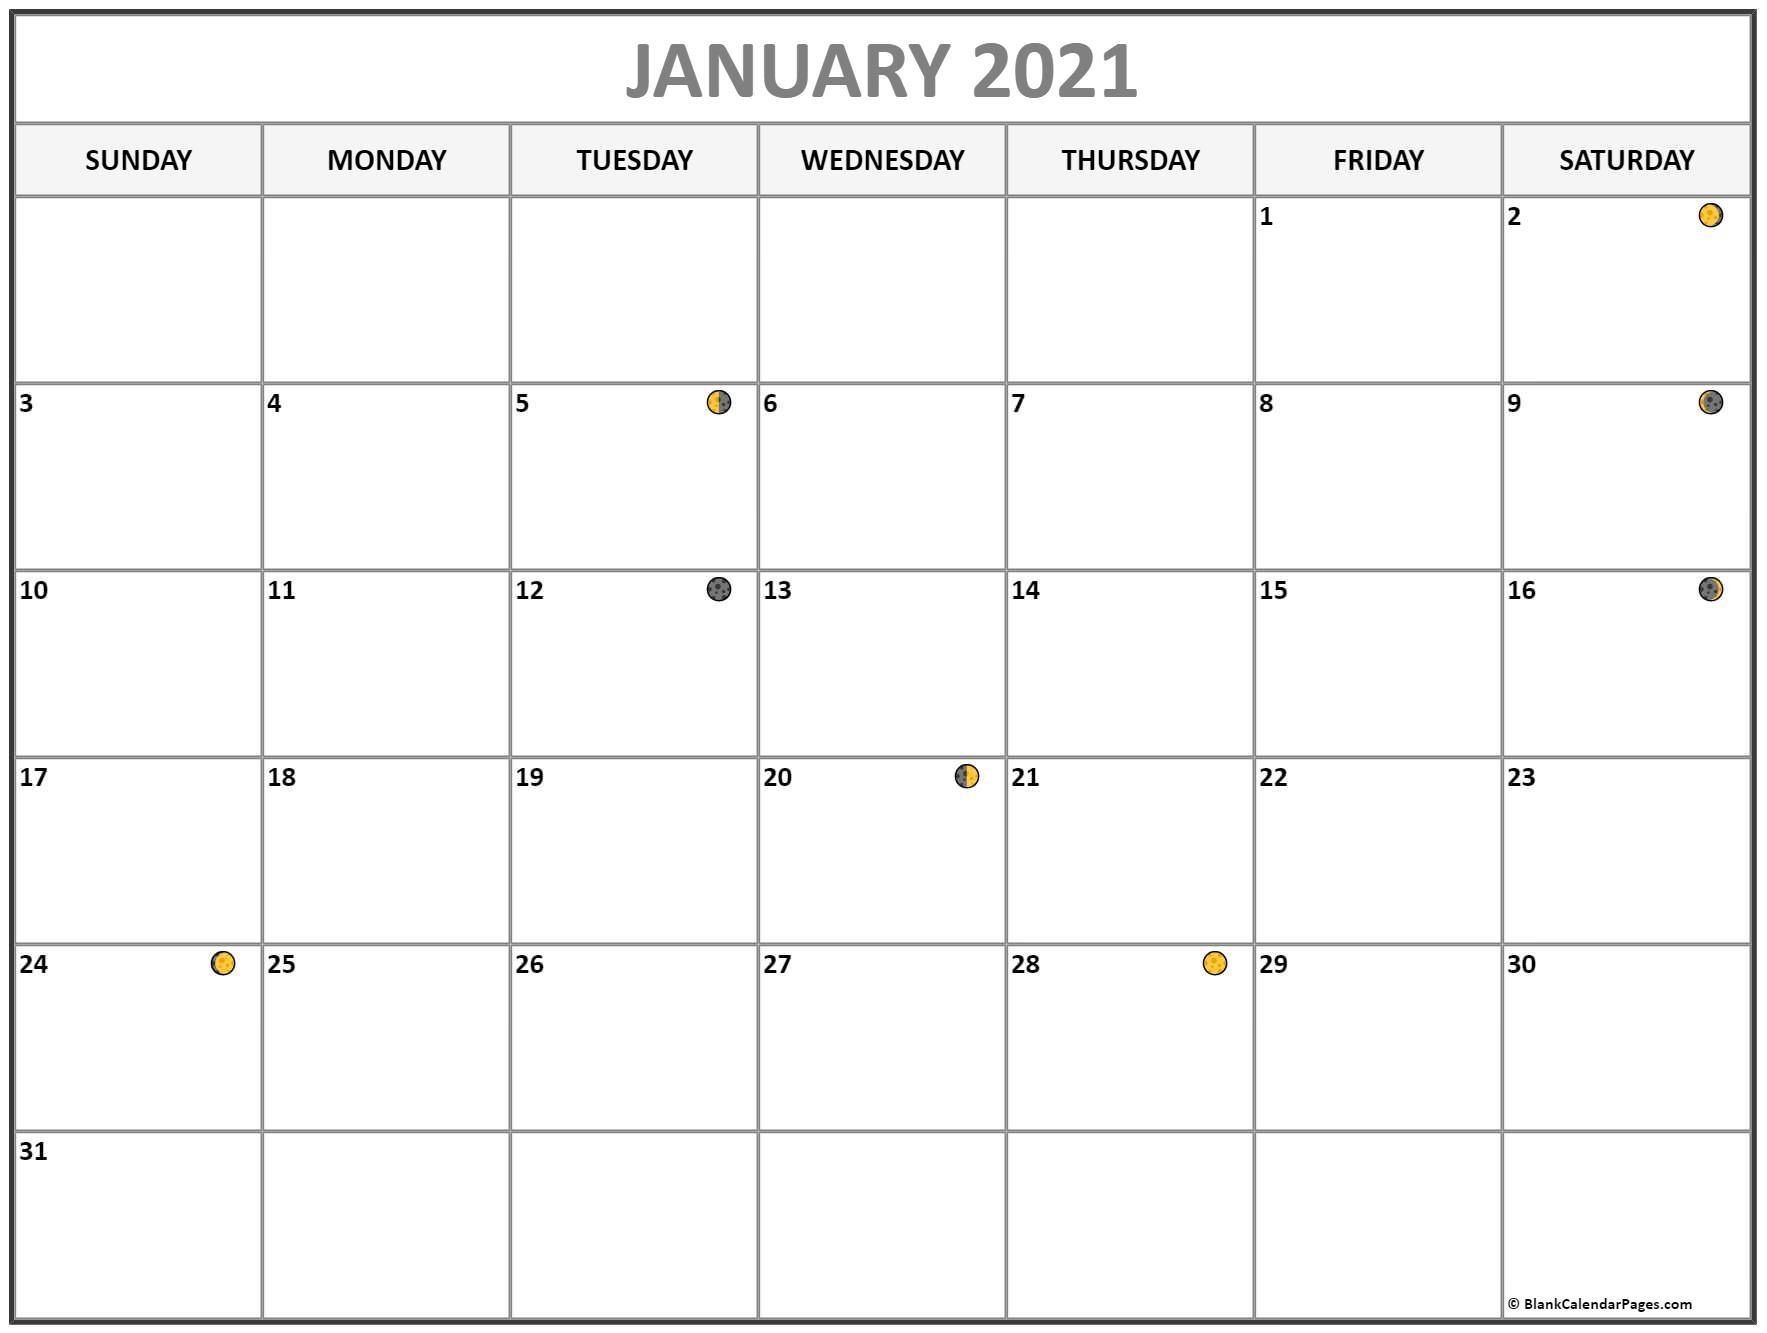 january 2021 lunar calendar | moon phase calendar